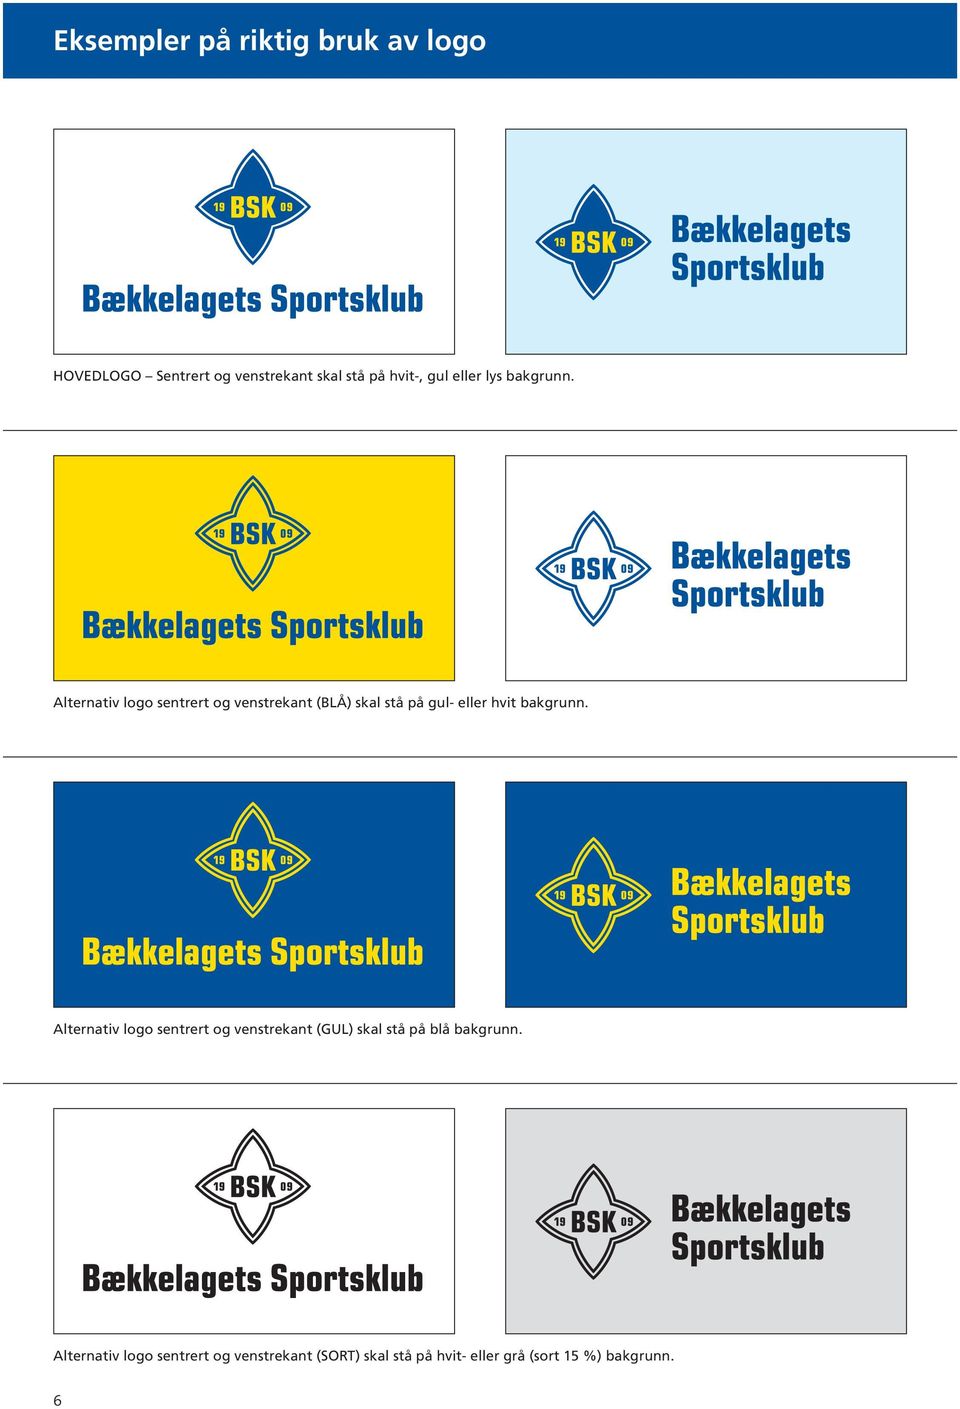 Alternativ logo sentrert og venstrekant (BLÅ) skal stå på gul- eller hvit bakgrunn.